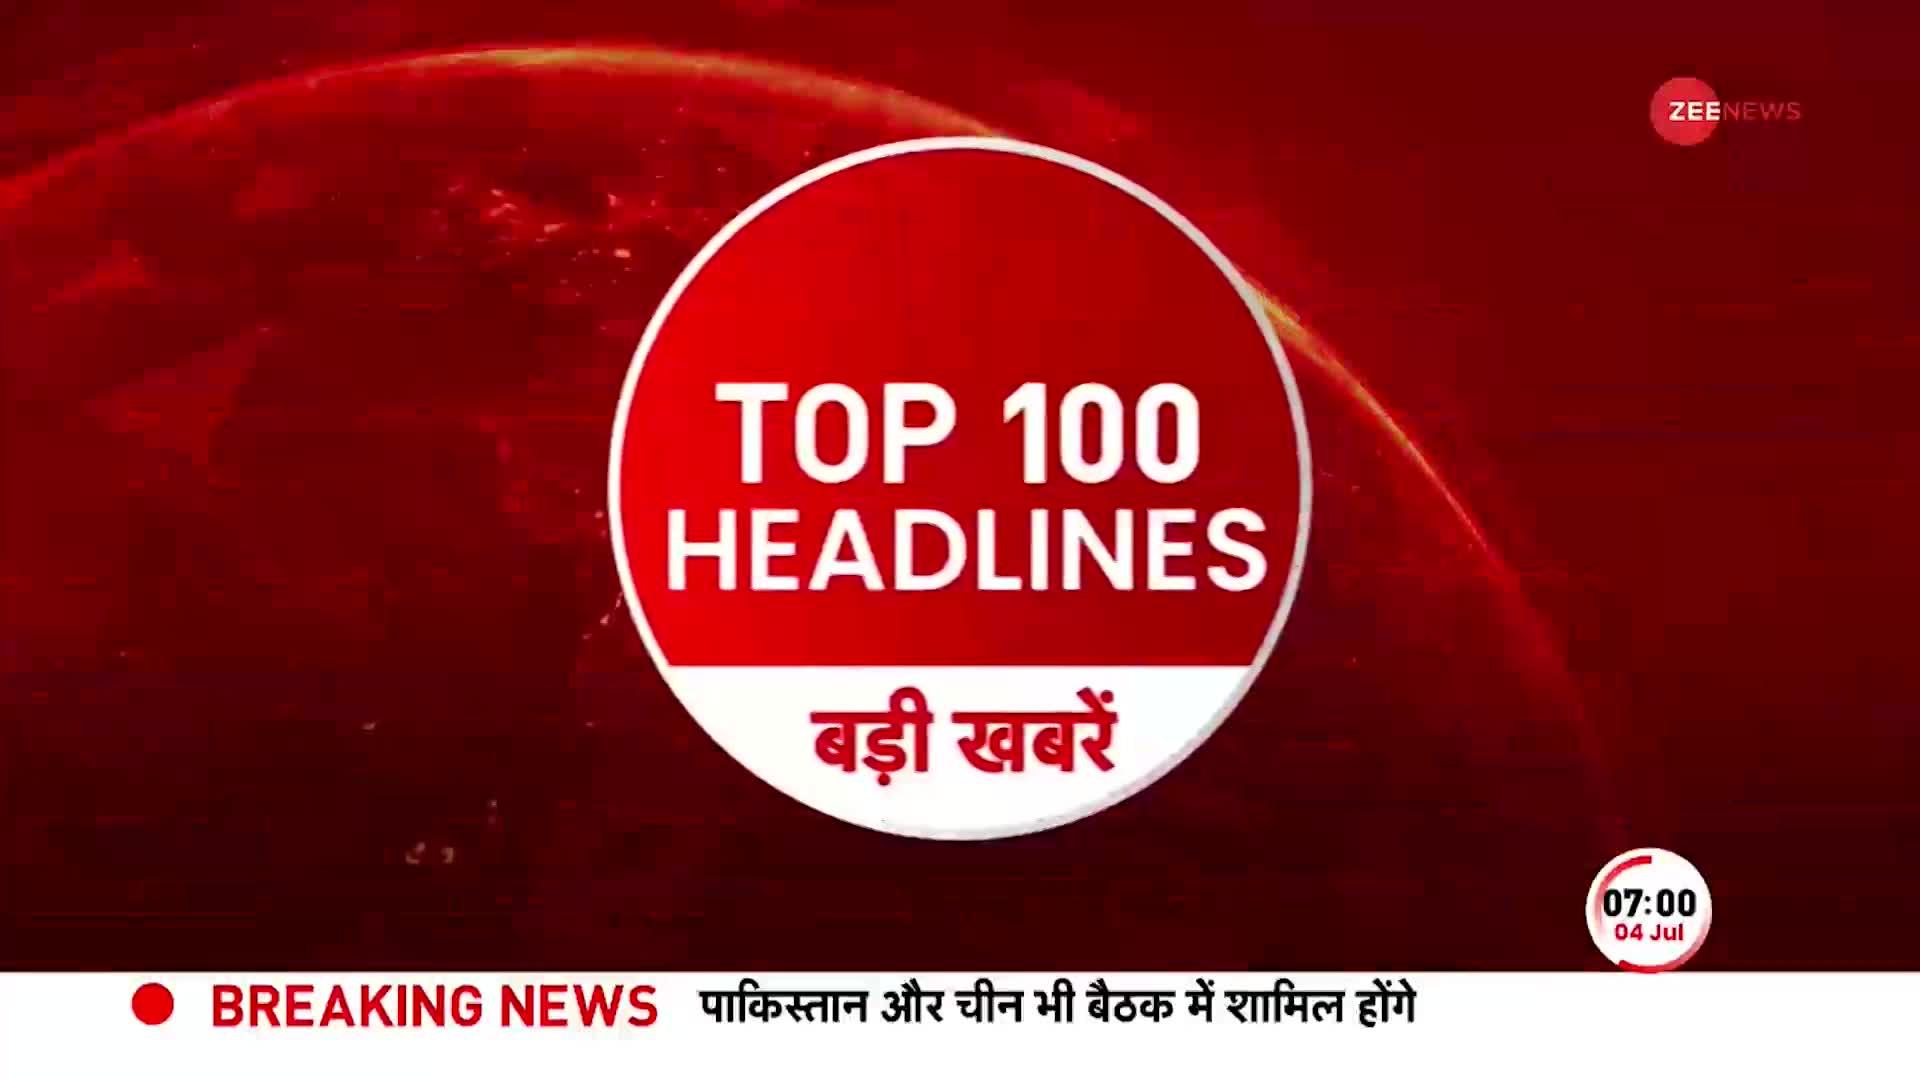 TOP 100: सुबह की 100 बड़ी खबरें सुपरफास्ट अंदाज में | Maharashtra Politics | PM Modi |  SCO summit